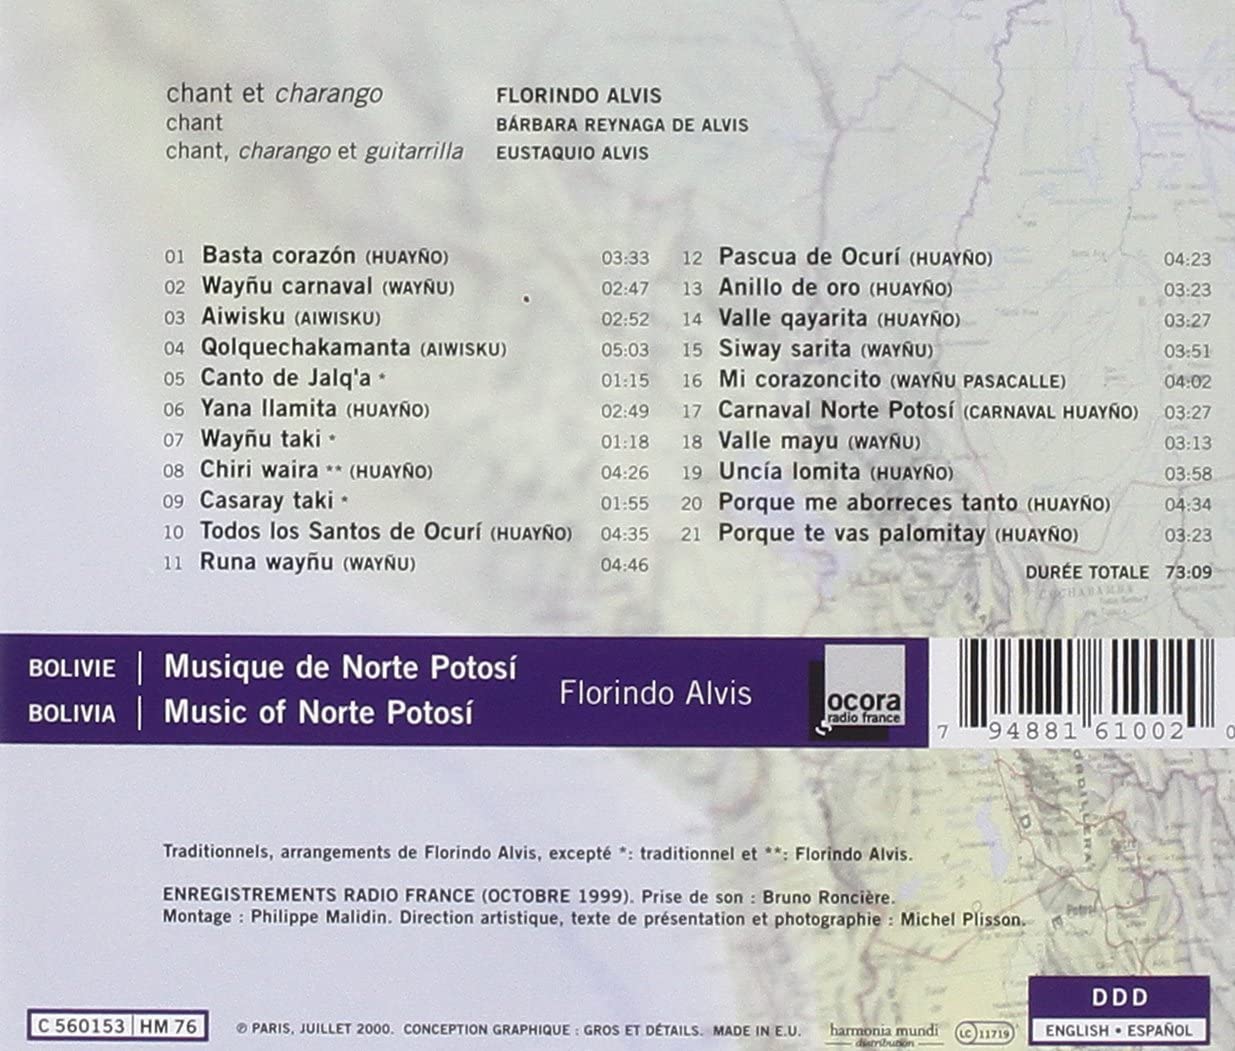 BOLIVIA - Music of Norte Potosí - slide-1